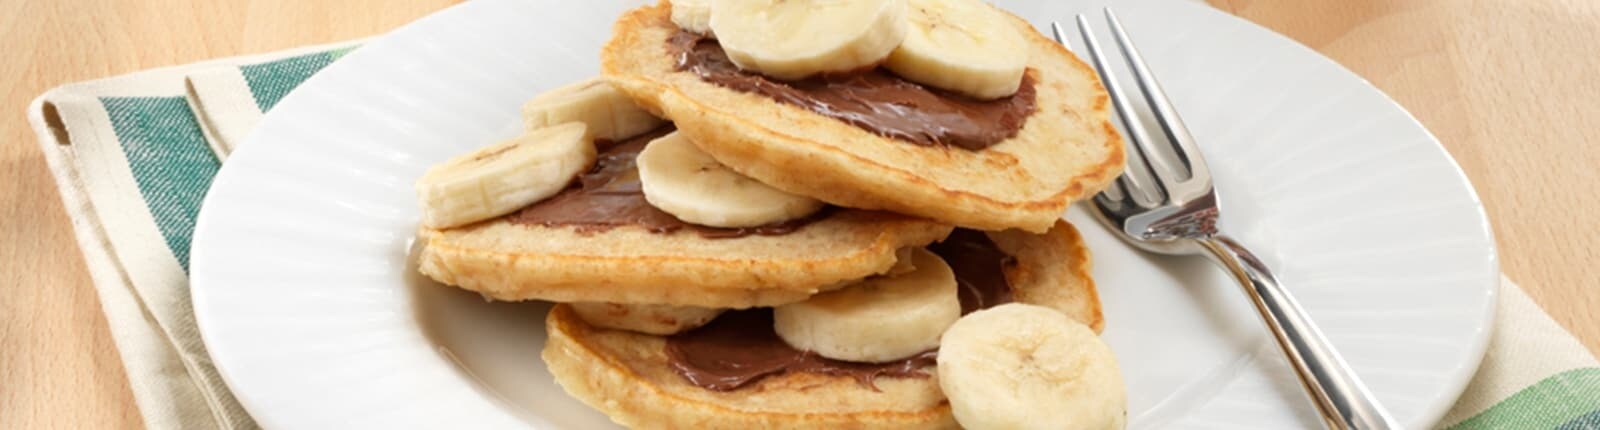 Pancakes bananadélicieux au Nutella®